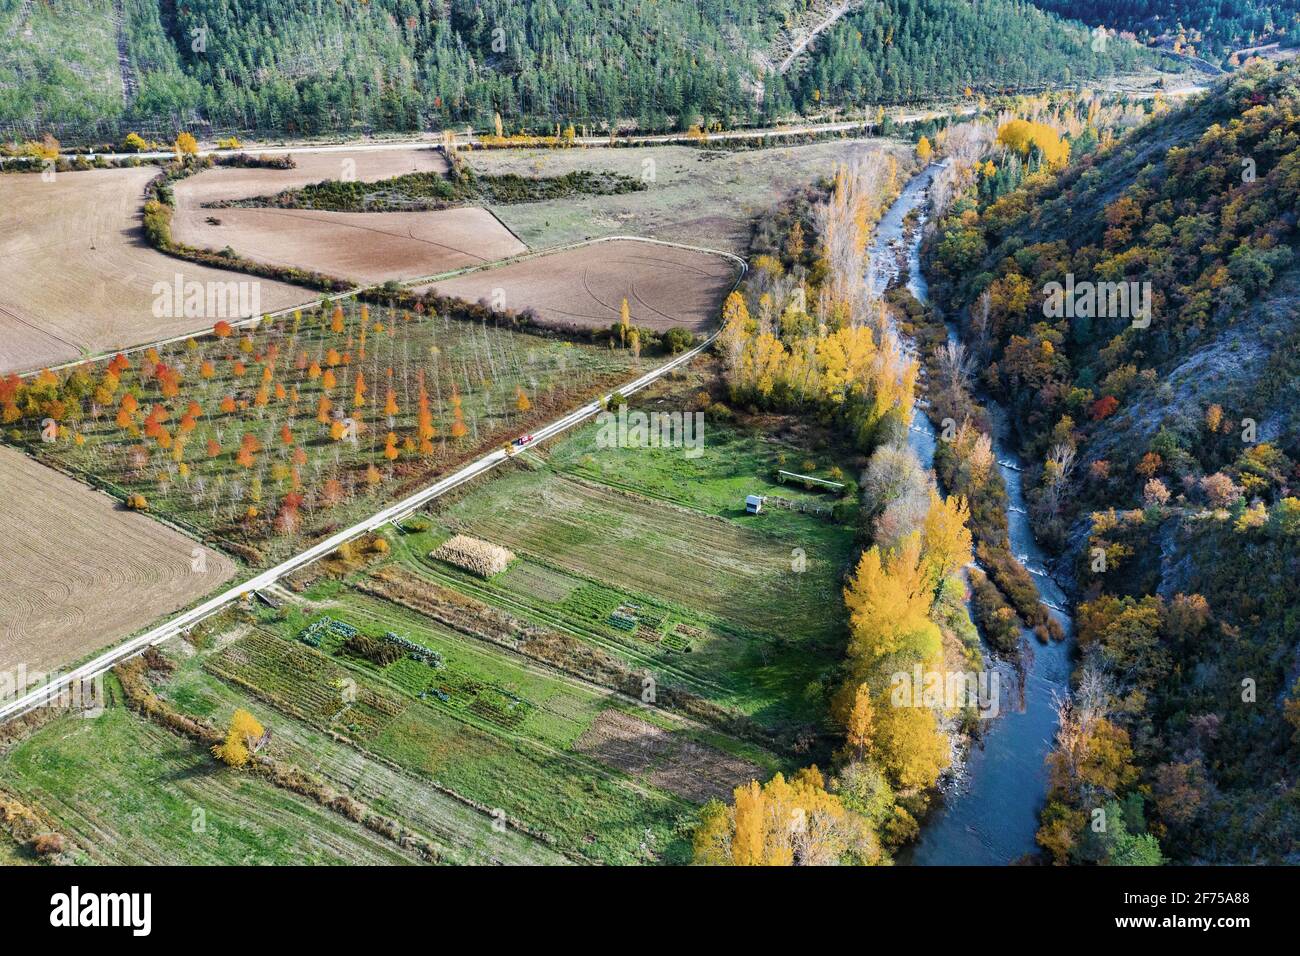 Vista aérea de un río y tierras de labranza con vegetación ribereña en otoño. Foto de stock